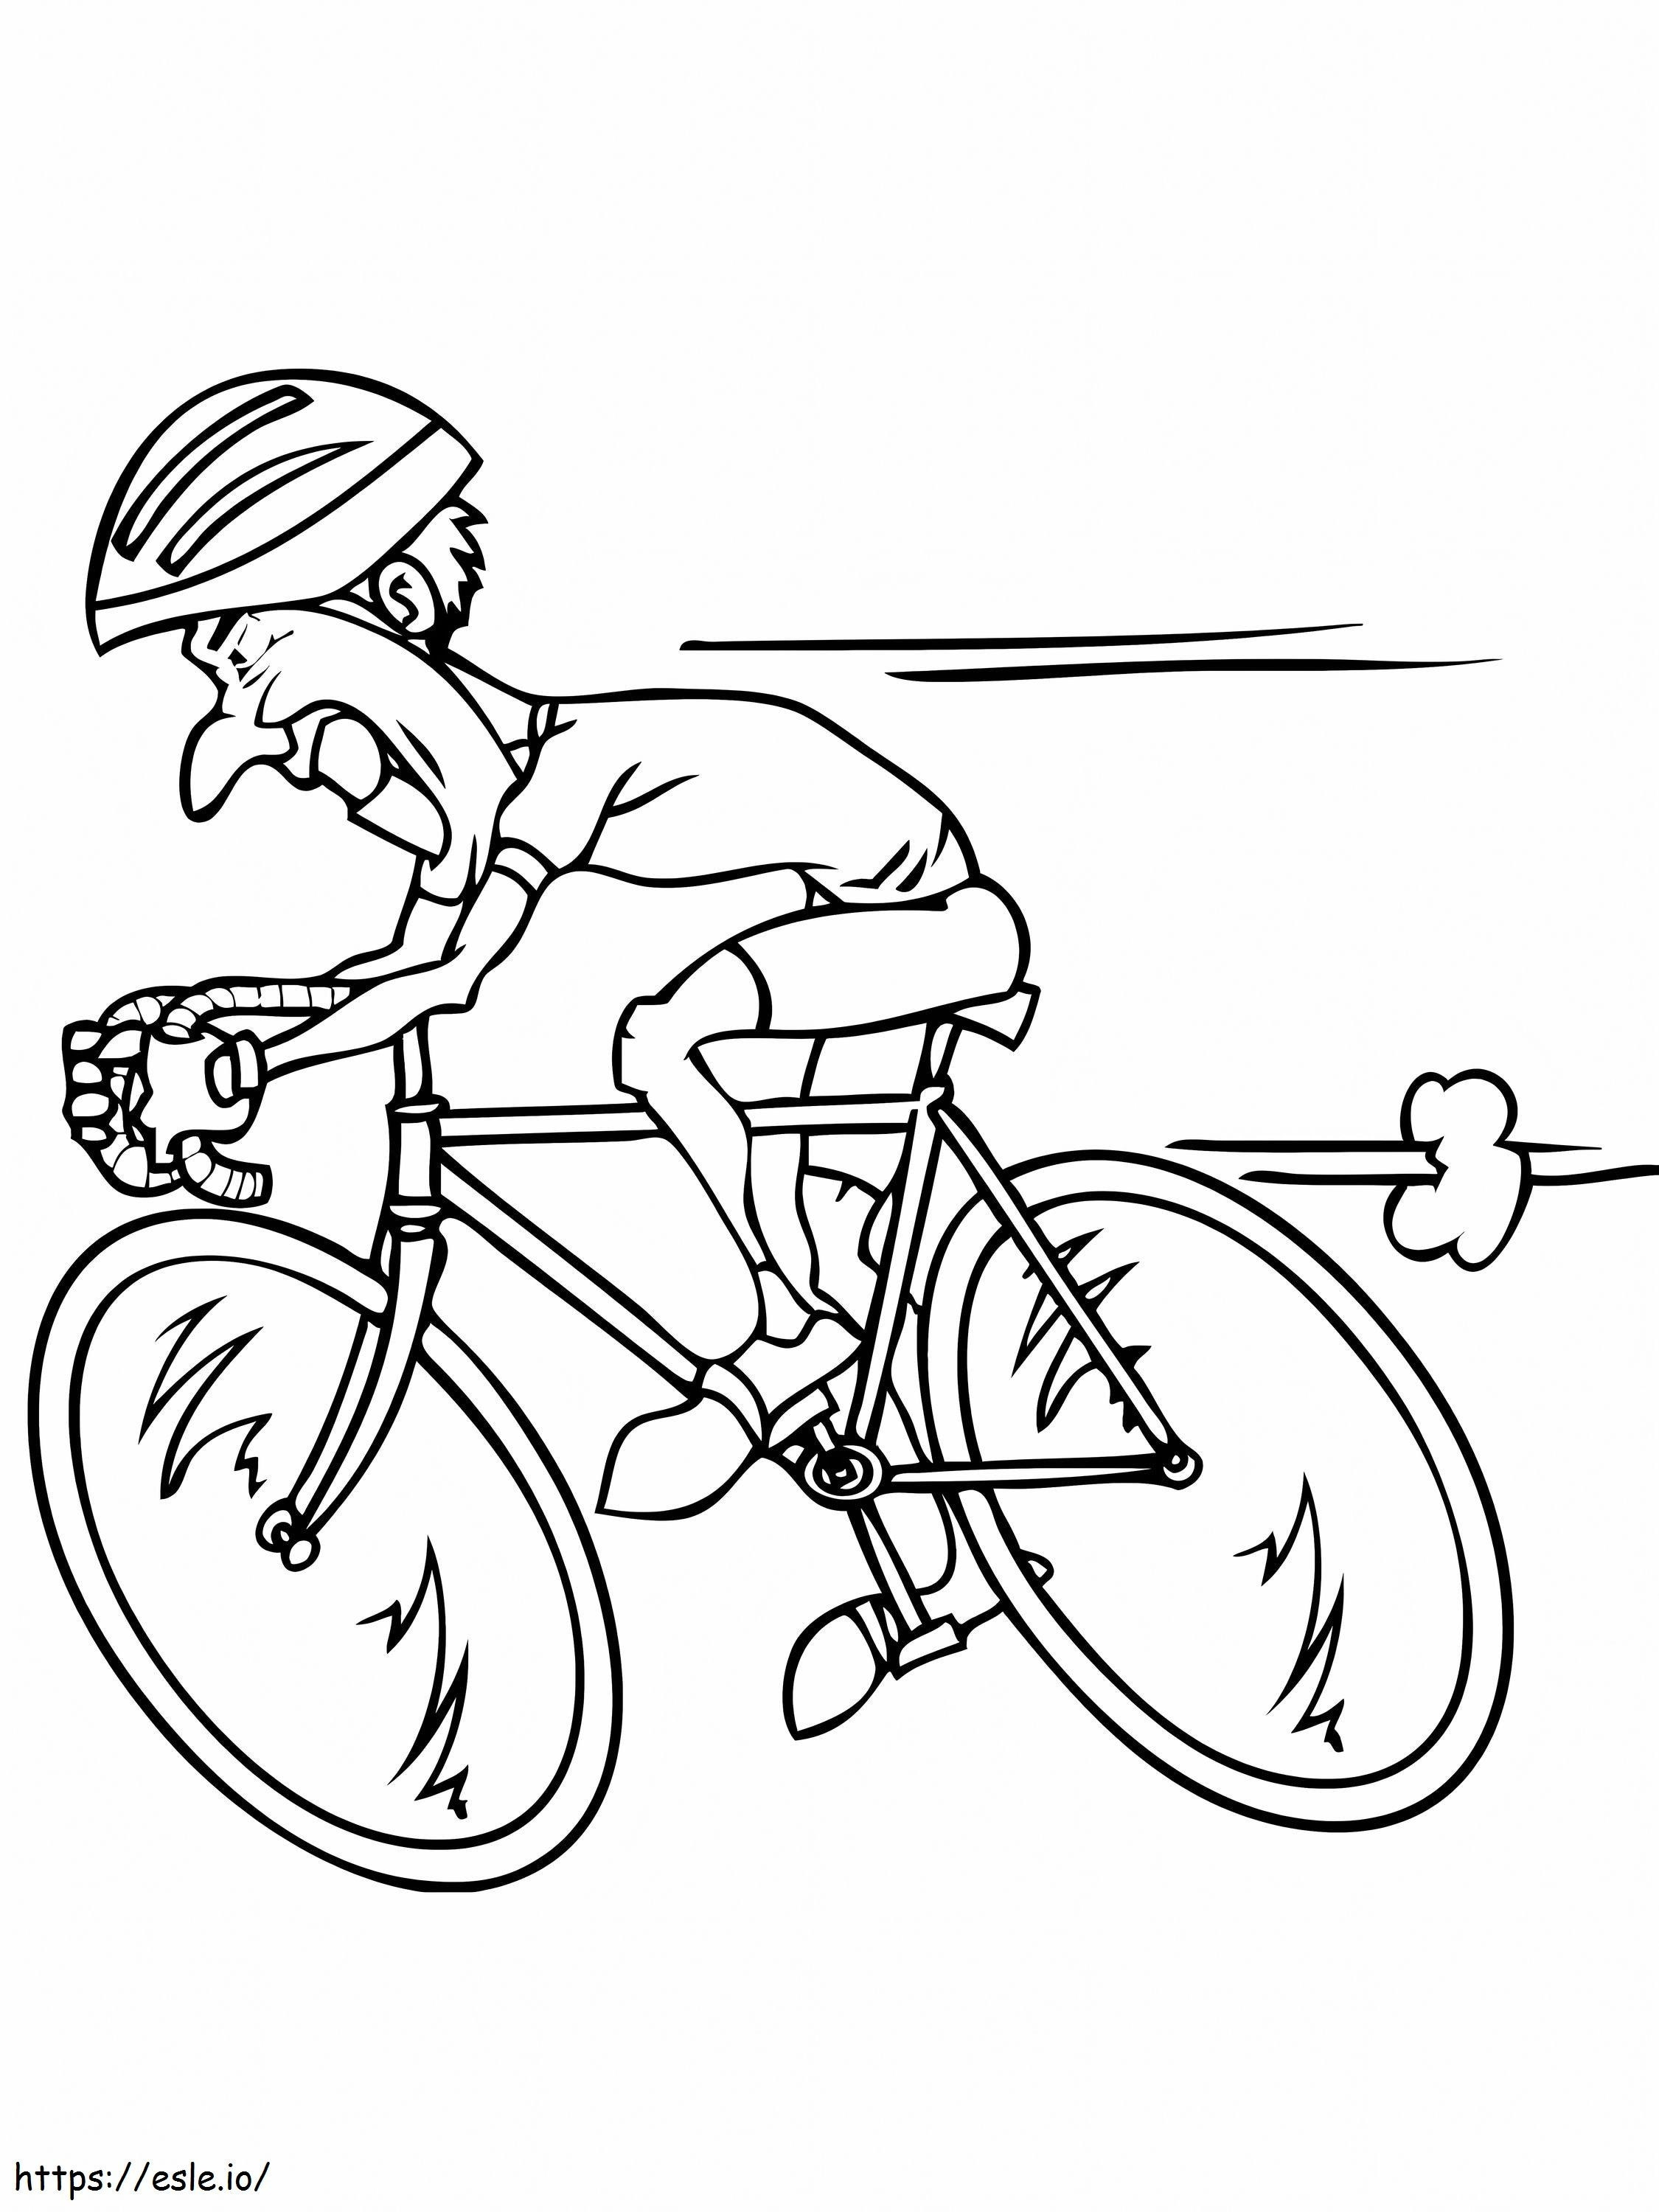 _Riding Racing Bicycle de colorat